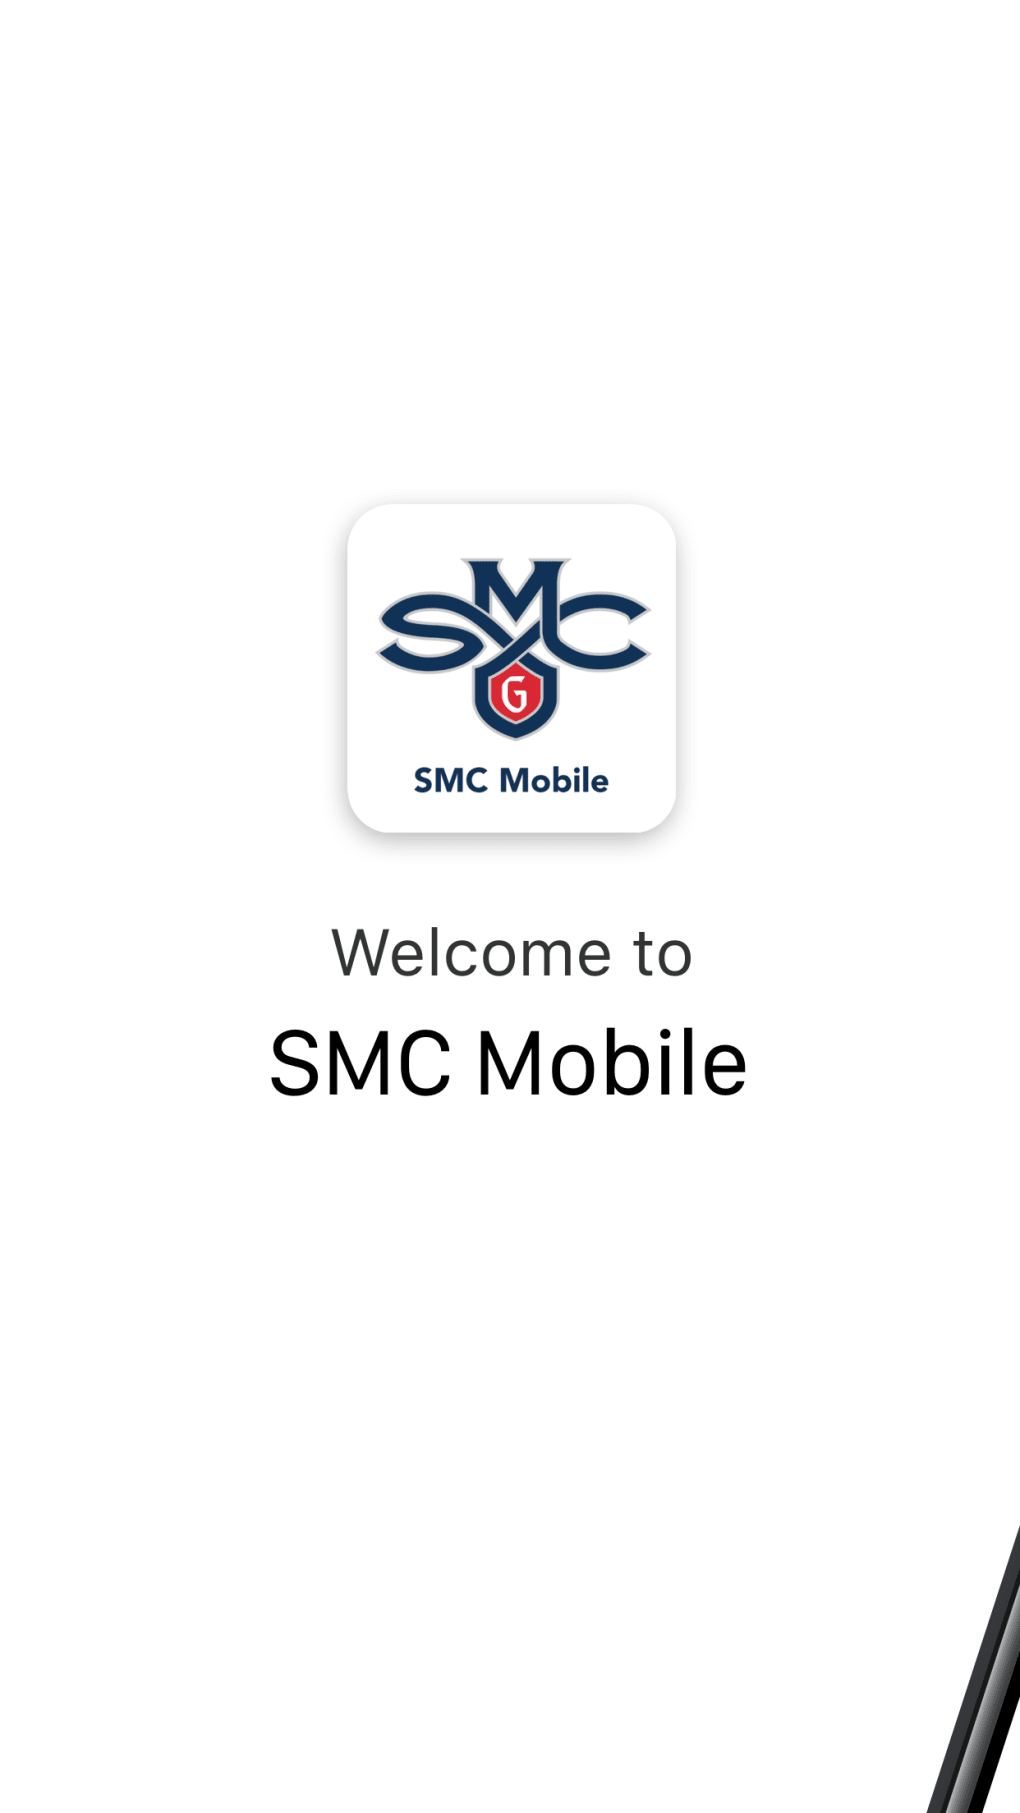 SMC Mobile - Saint Marys CA для iPhone — Скачать